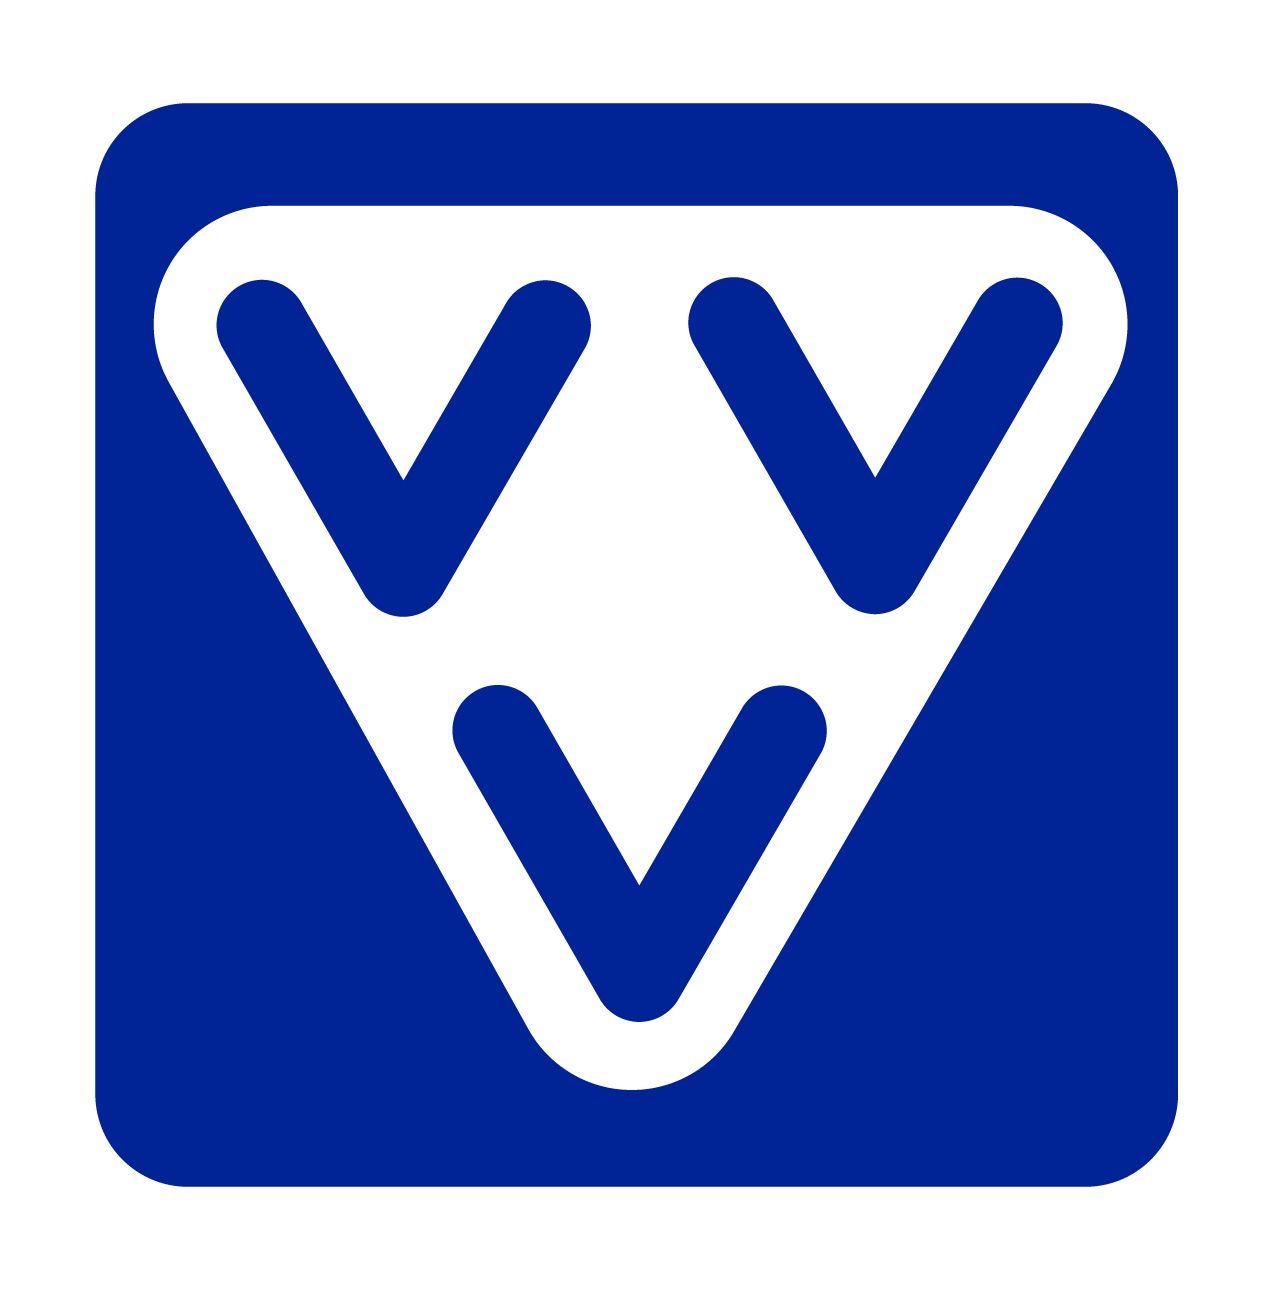 vvv-logo website heumens bos